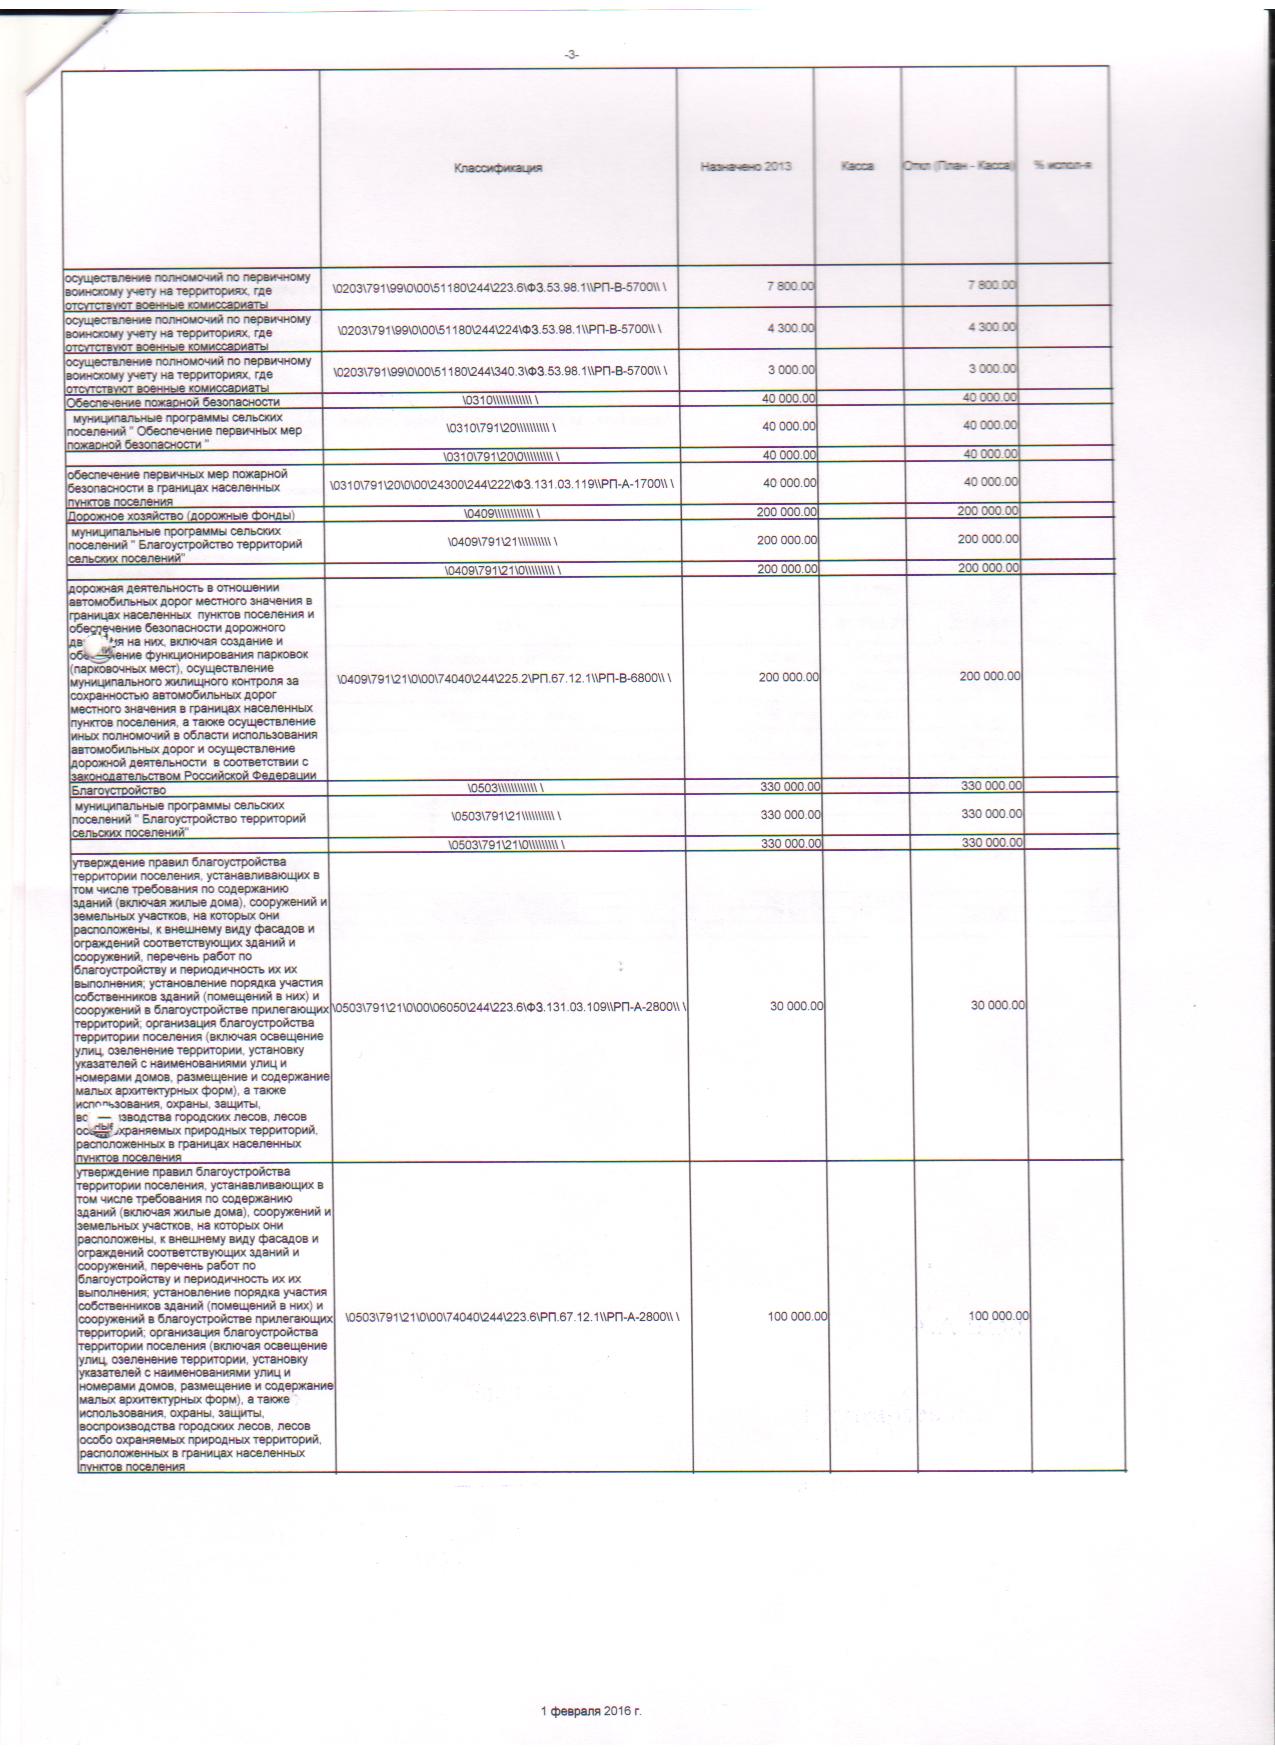 месячный отчет об исполнении бюджета на 01.02.2016г. 002